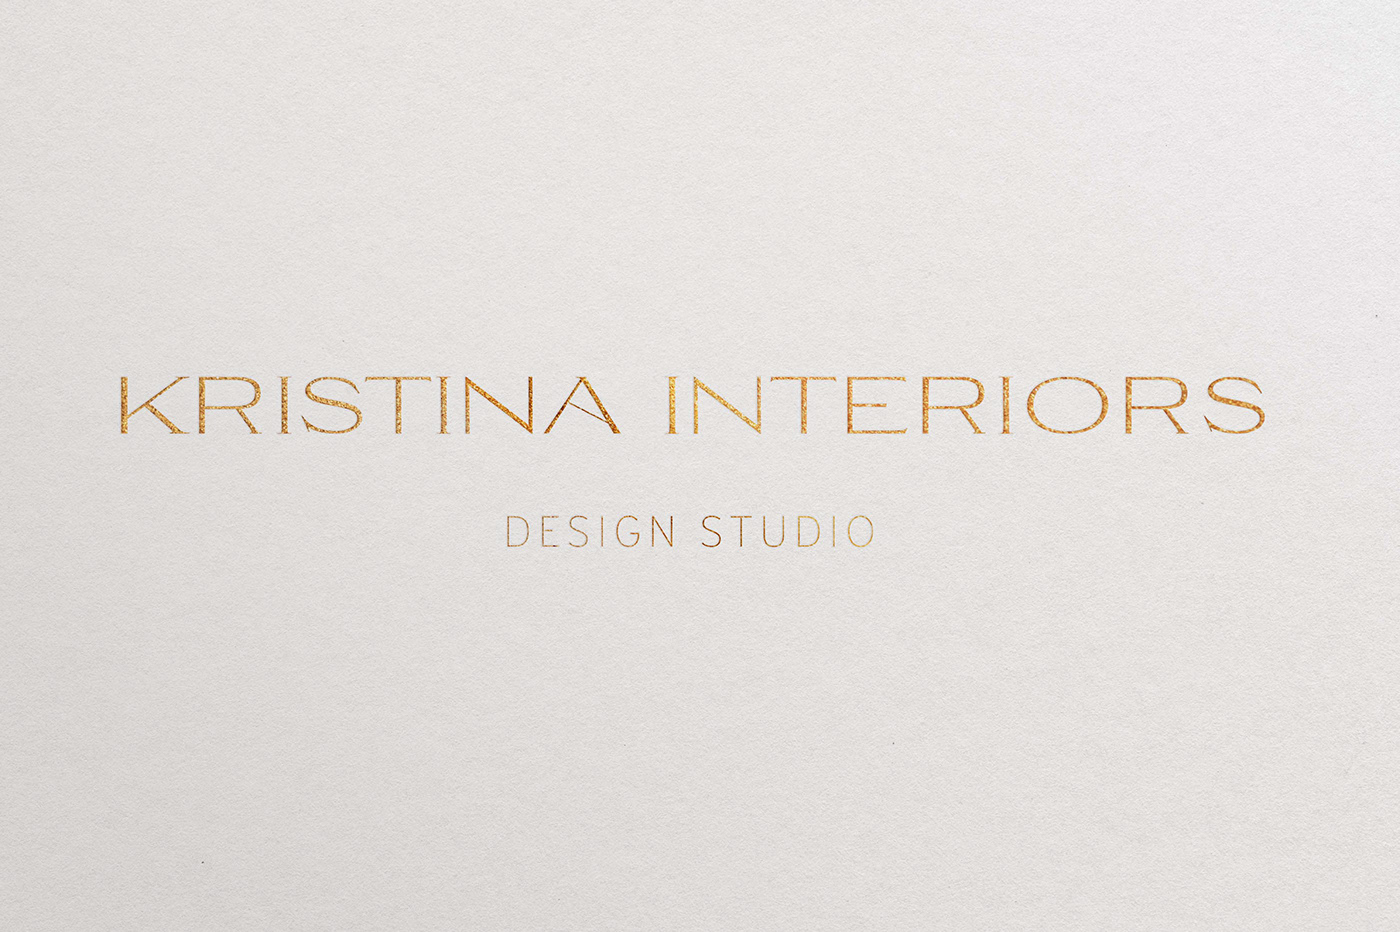 interior design  logo vector дизайн интерьера логотип ЛОГОТИП НА ЗАКАЗ разработка логотипа студия дизайна студия дизайна интерьера фирменный стиль